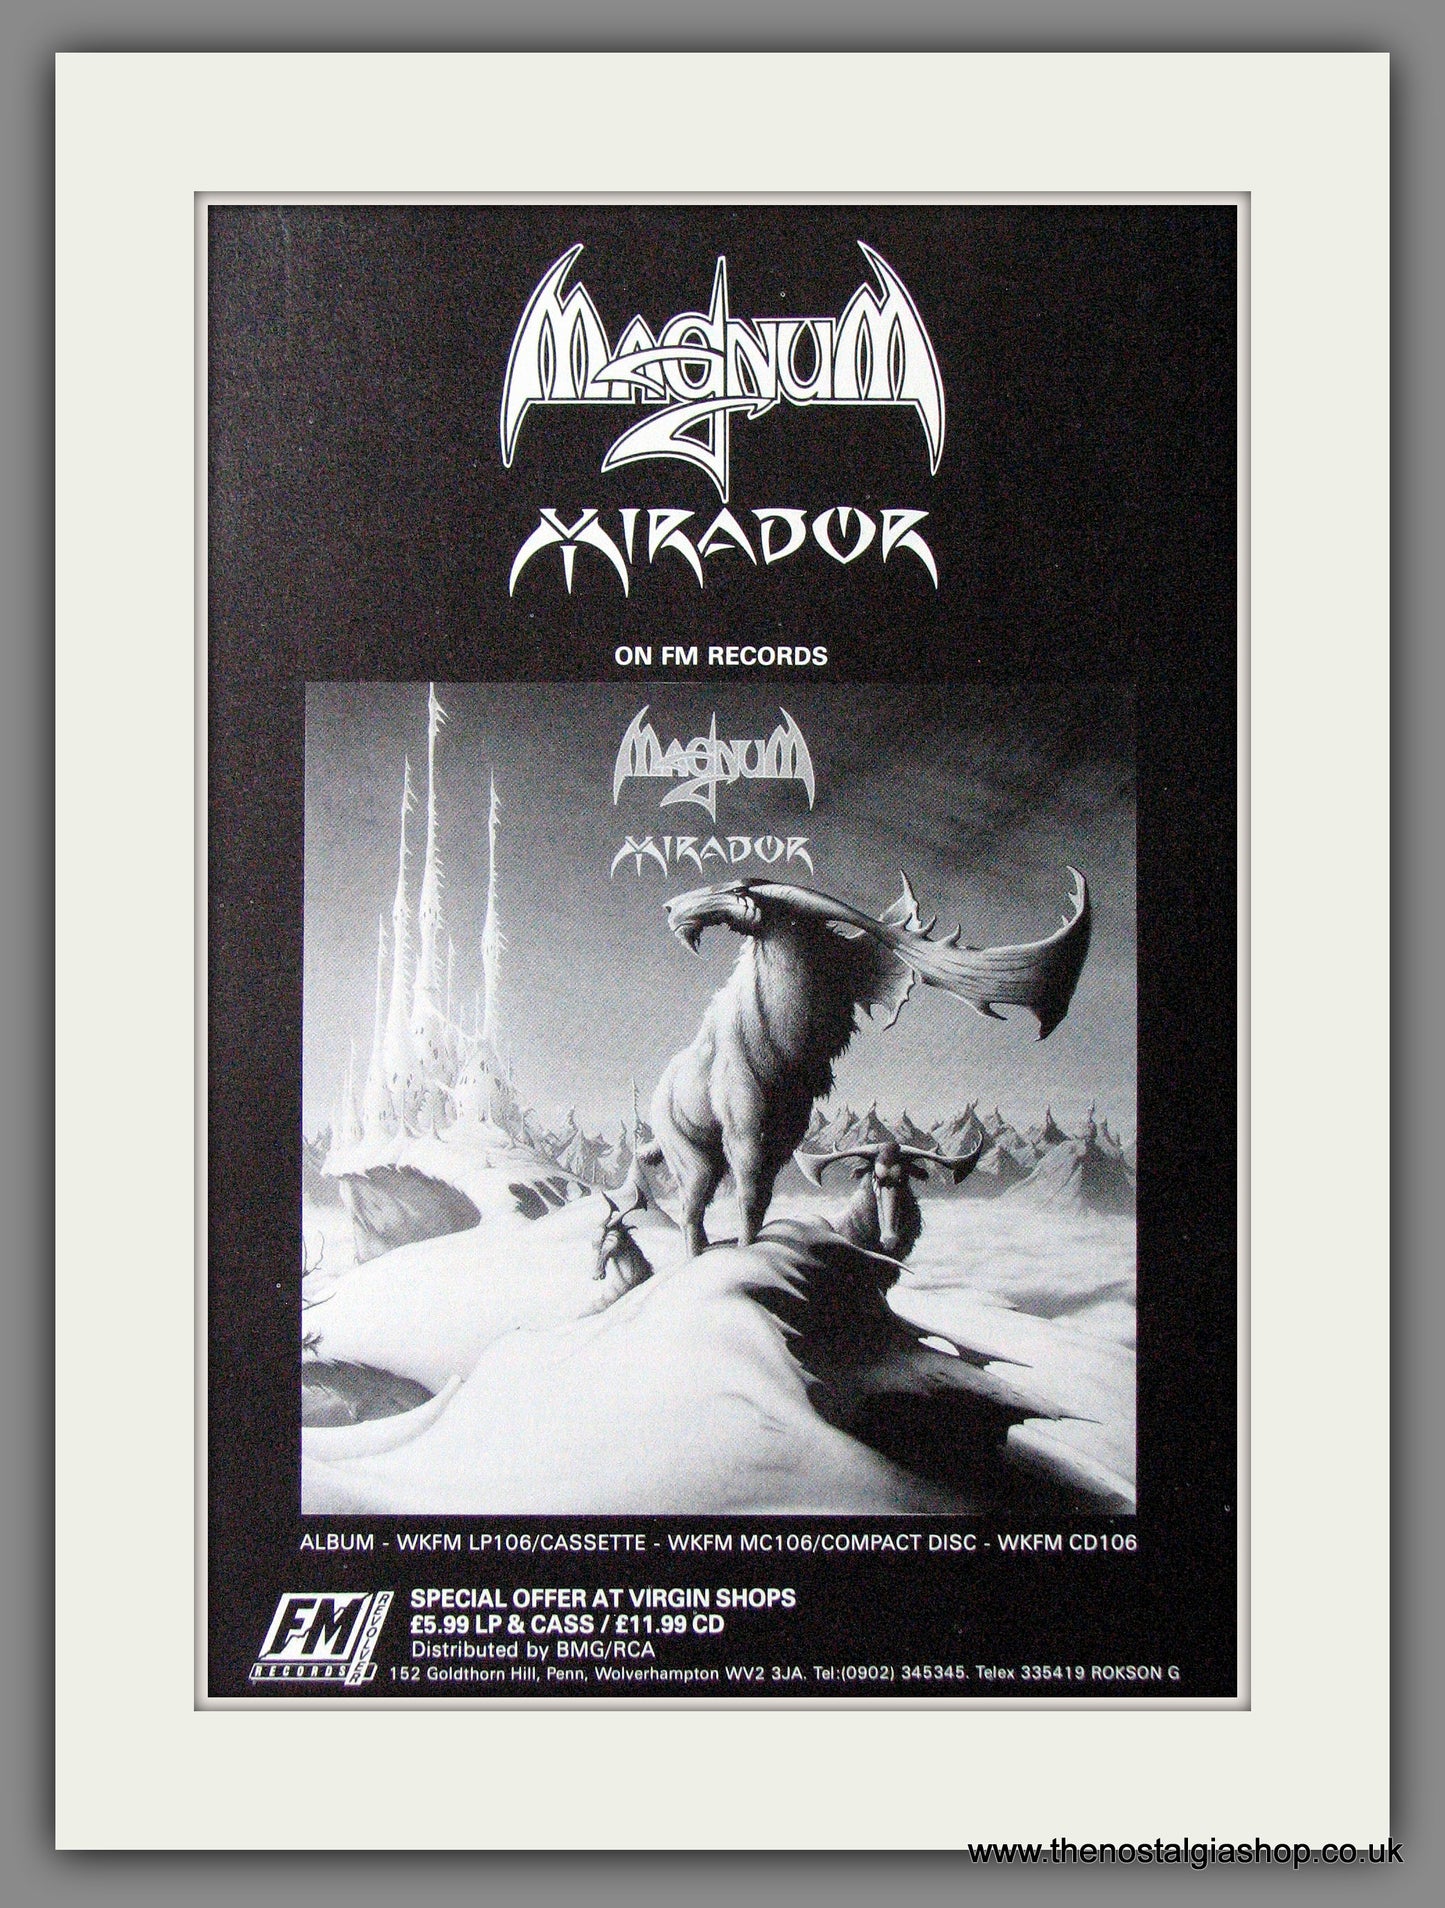 Magnum. Mirador. 1987 Original Advert (ref AD53959)